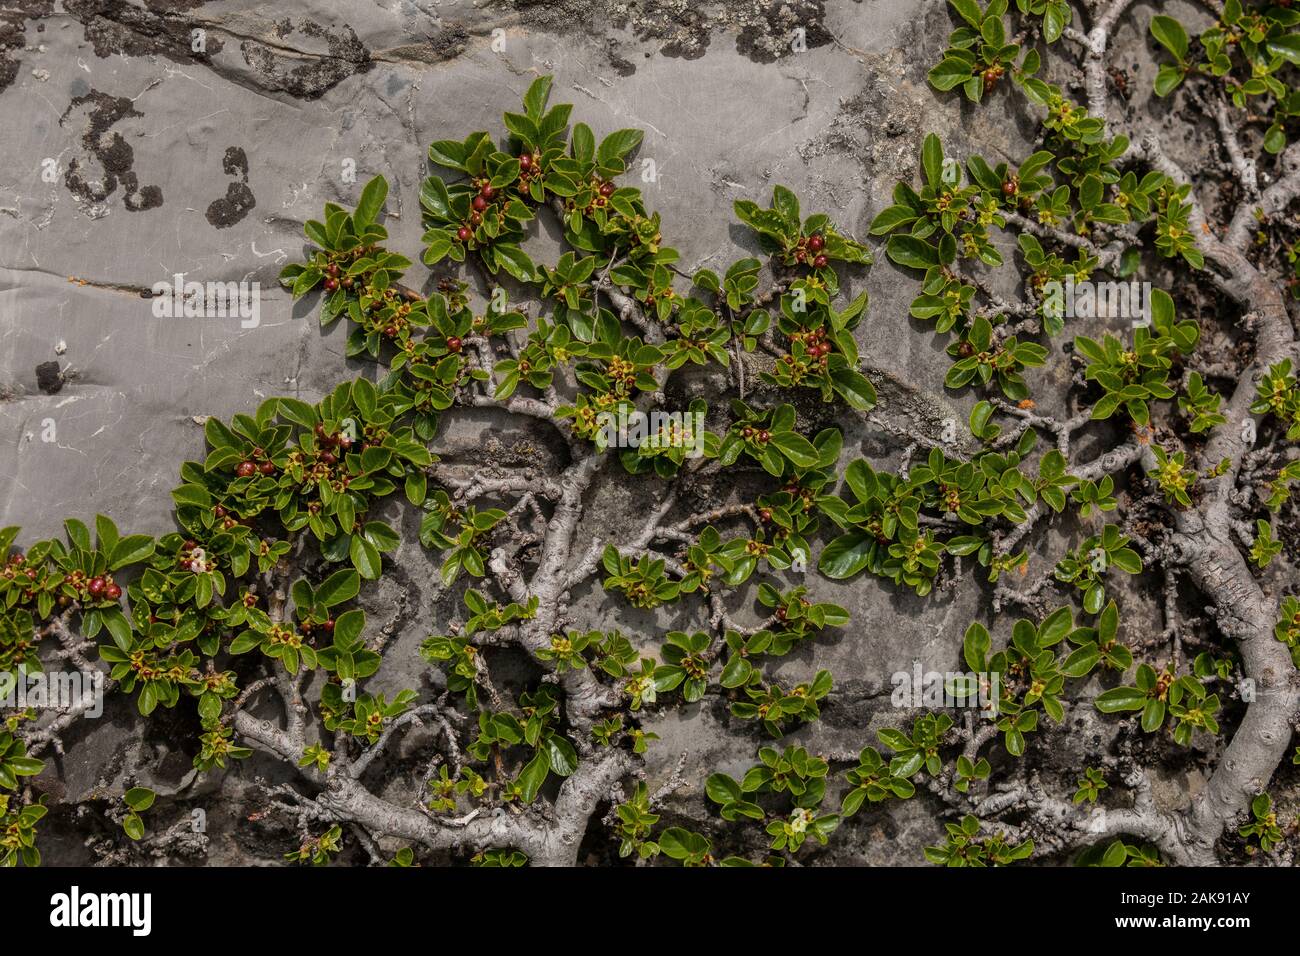 Le nerprun nain, Rhamnus pumila ; bush prostré en fleurs et fruits, sur roche calcaire. Alpes Maritimes. Banque D'Images